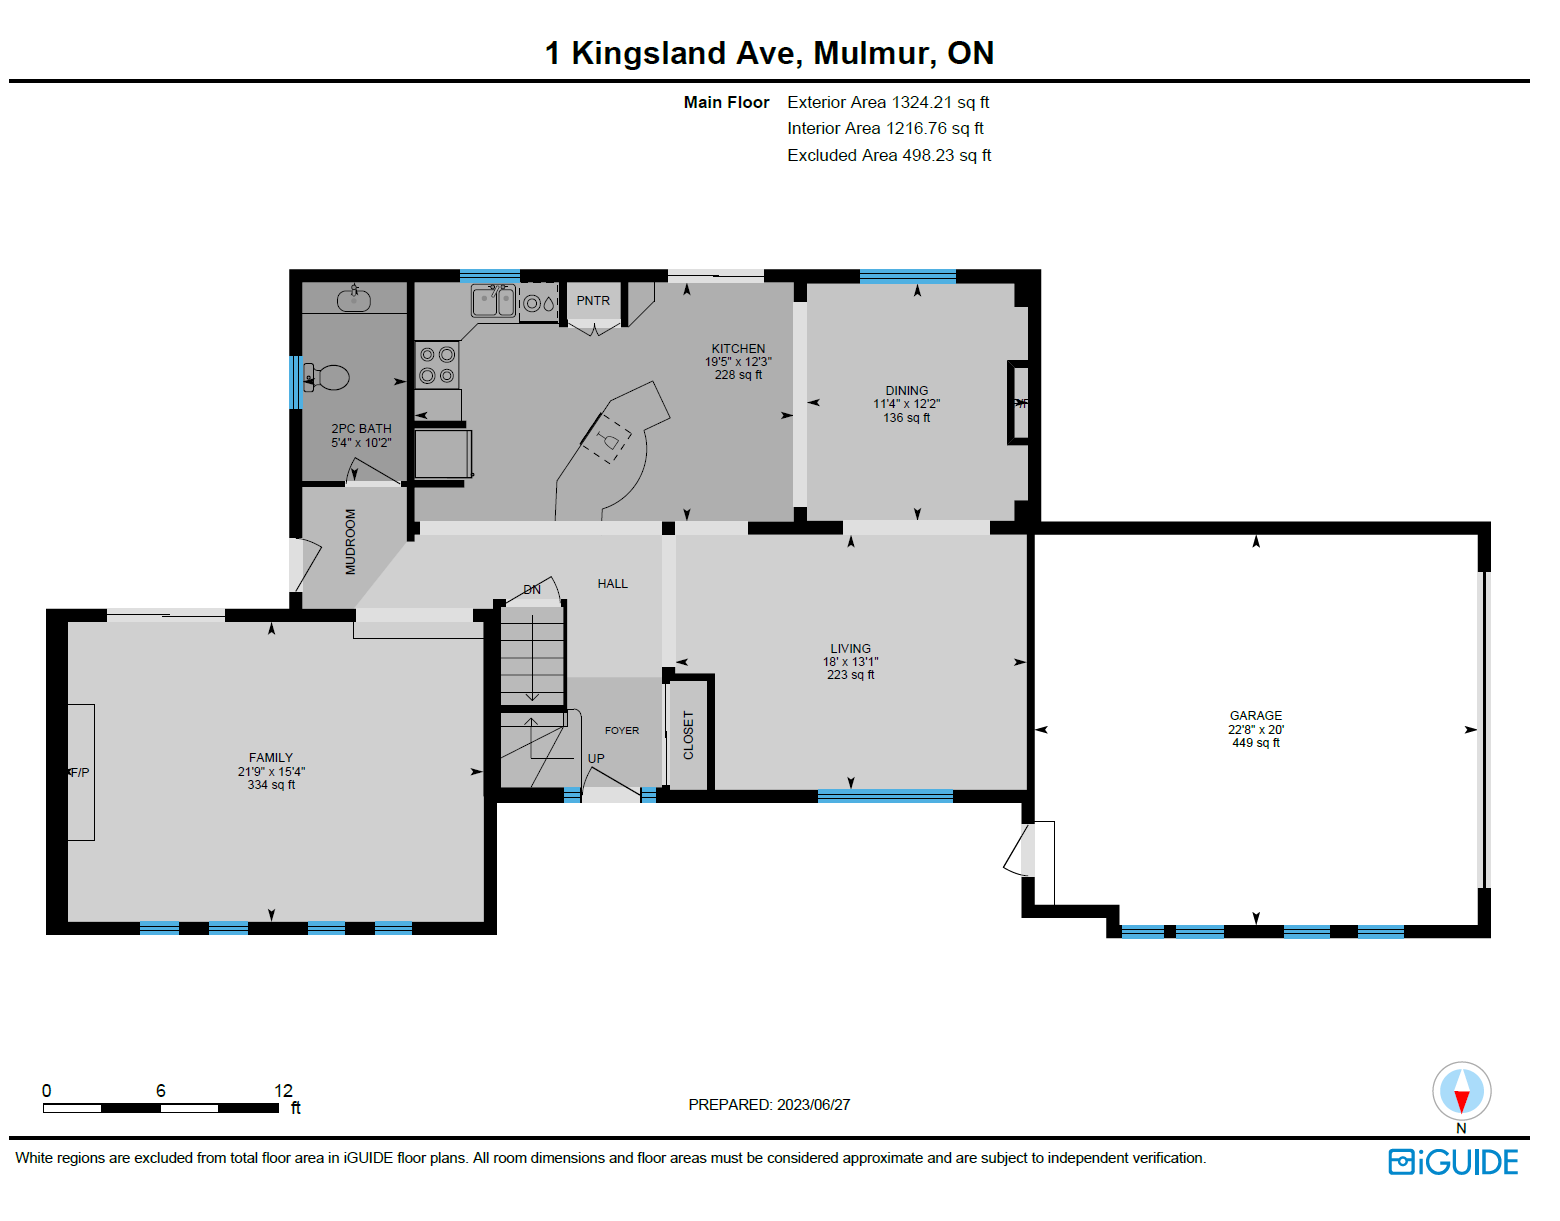 a floor plan of a house on 1 kingsland ave.